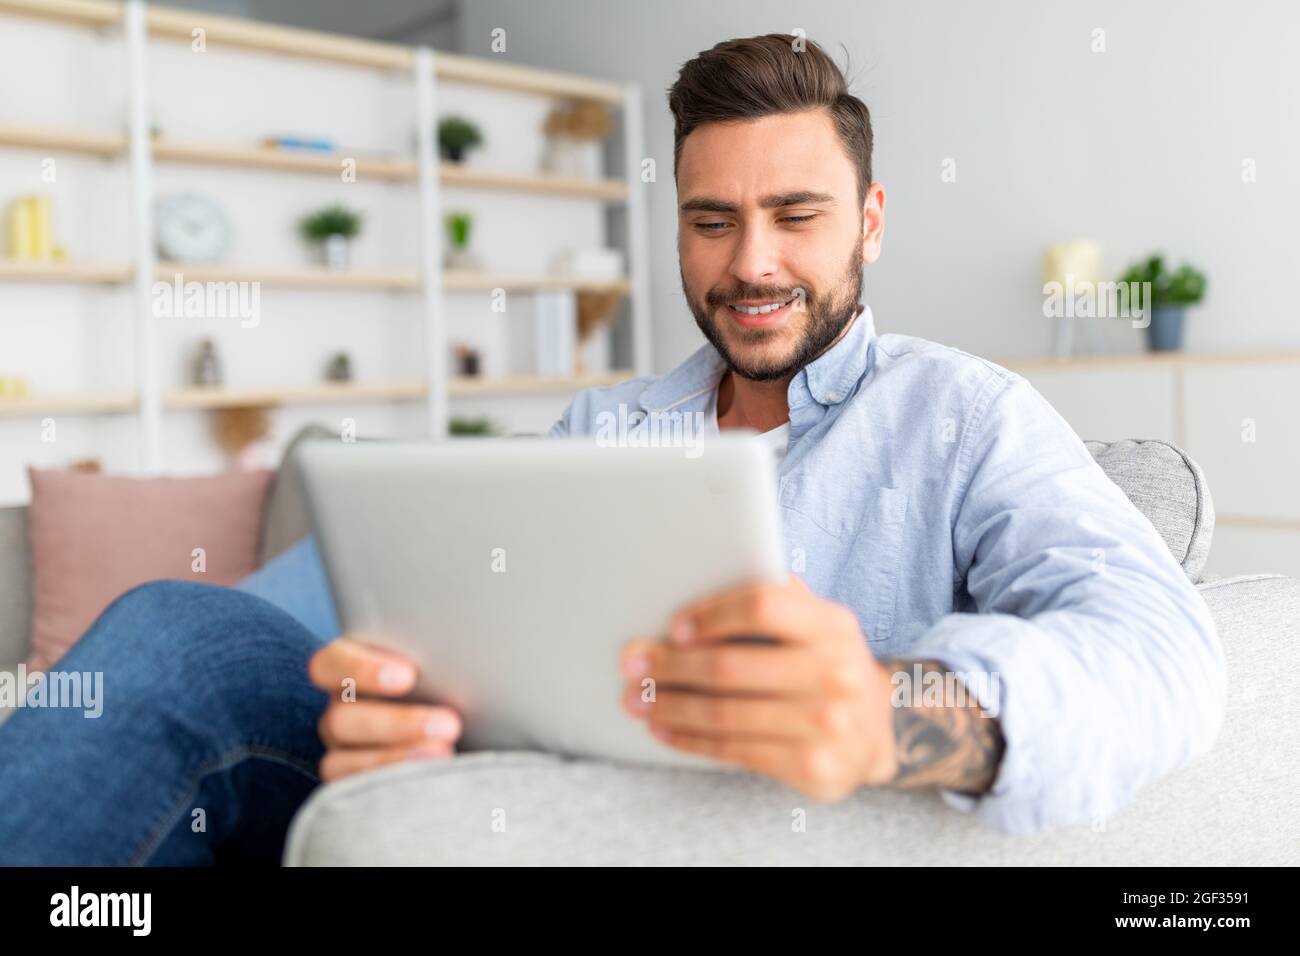 Primo piano dell'uomo caucasico che riposa sul divano con un tablet digitale, utilizzando una bella app mobile, interni domestici, spazio libero Foto Stock